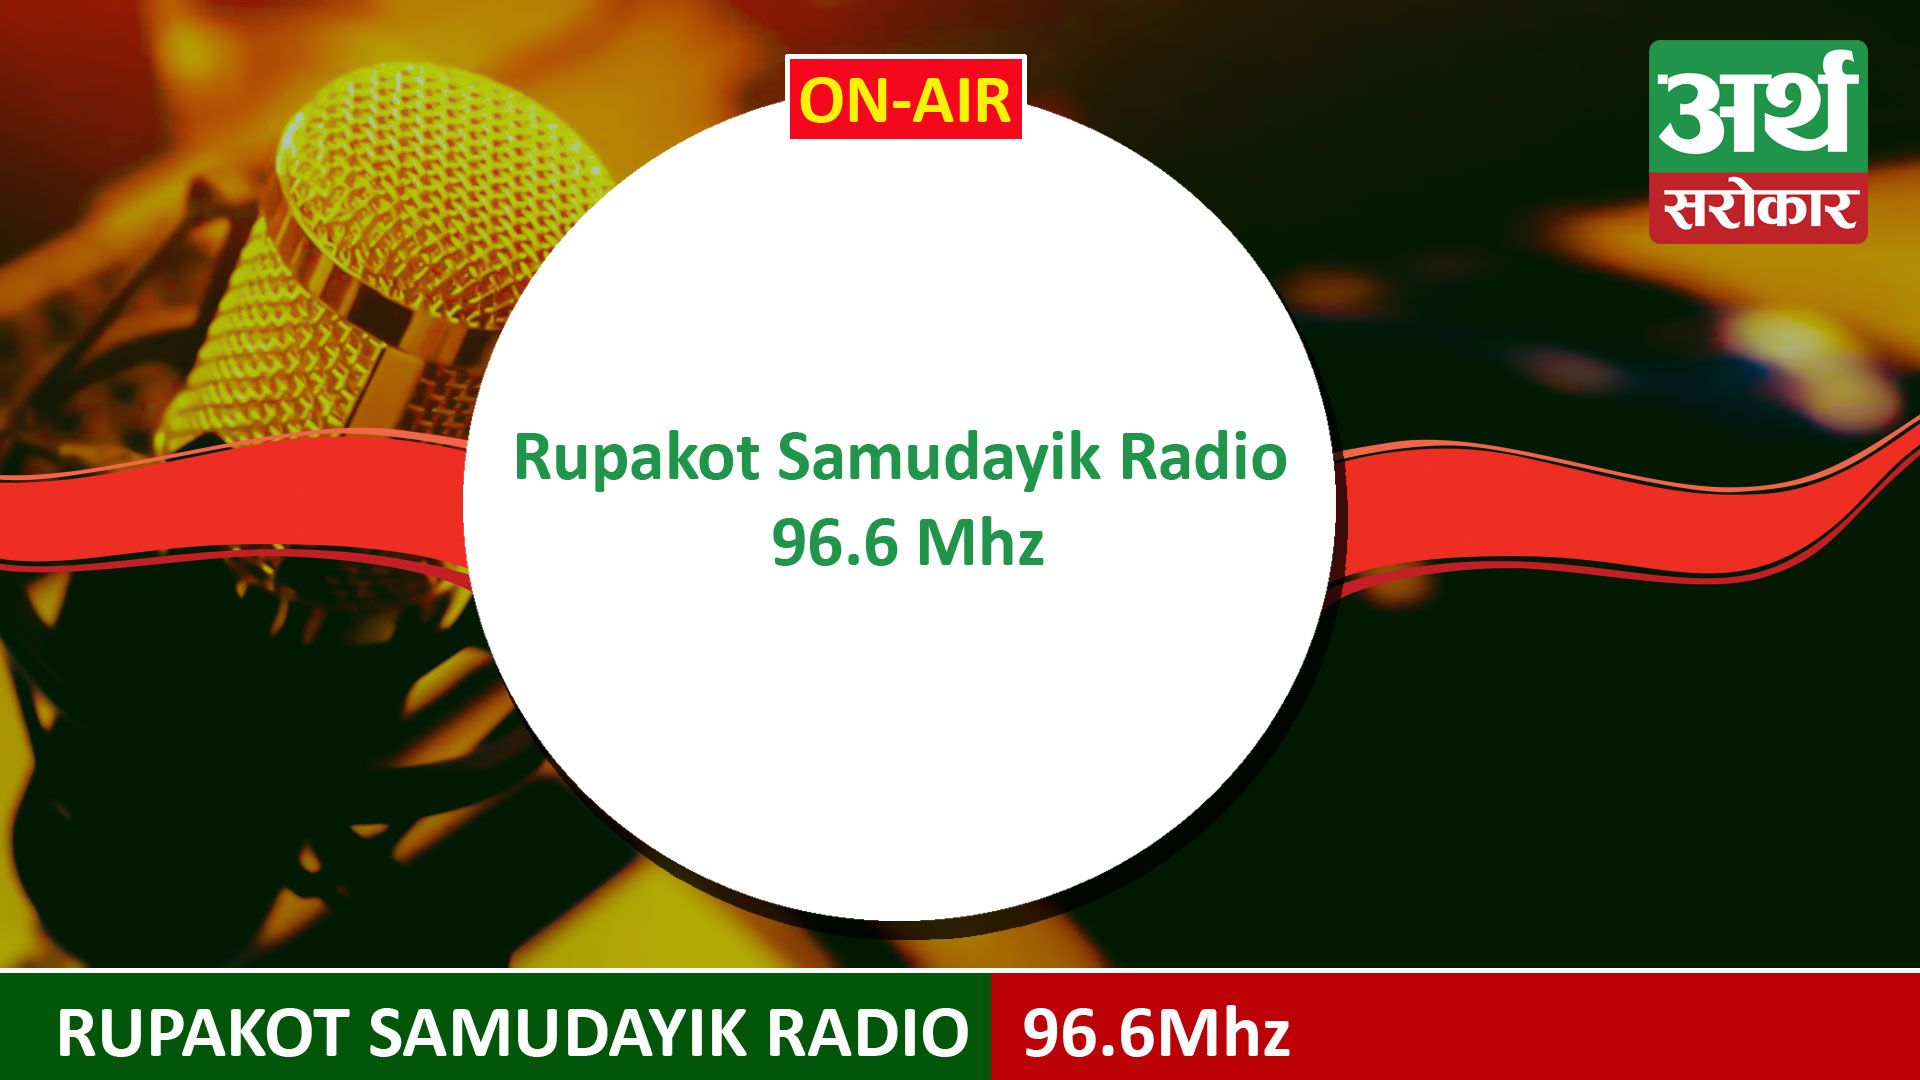 Rupakot Samudayik Radio 96.6Mhz